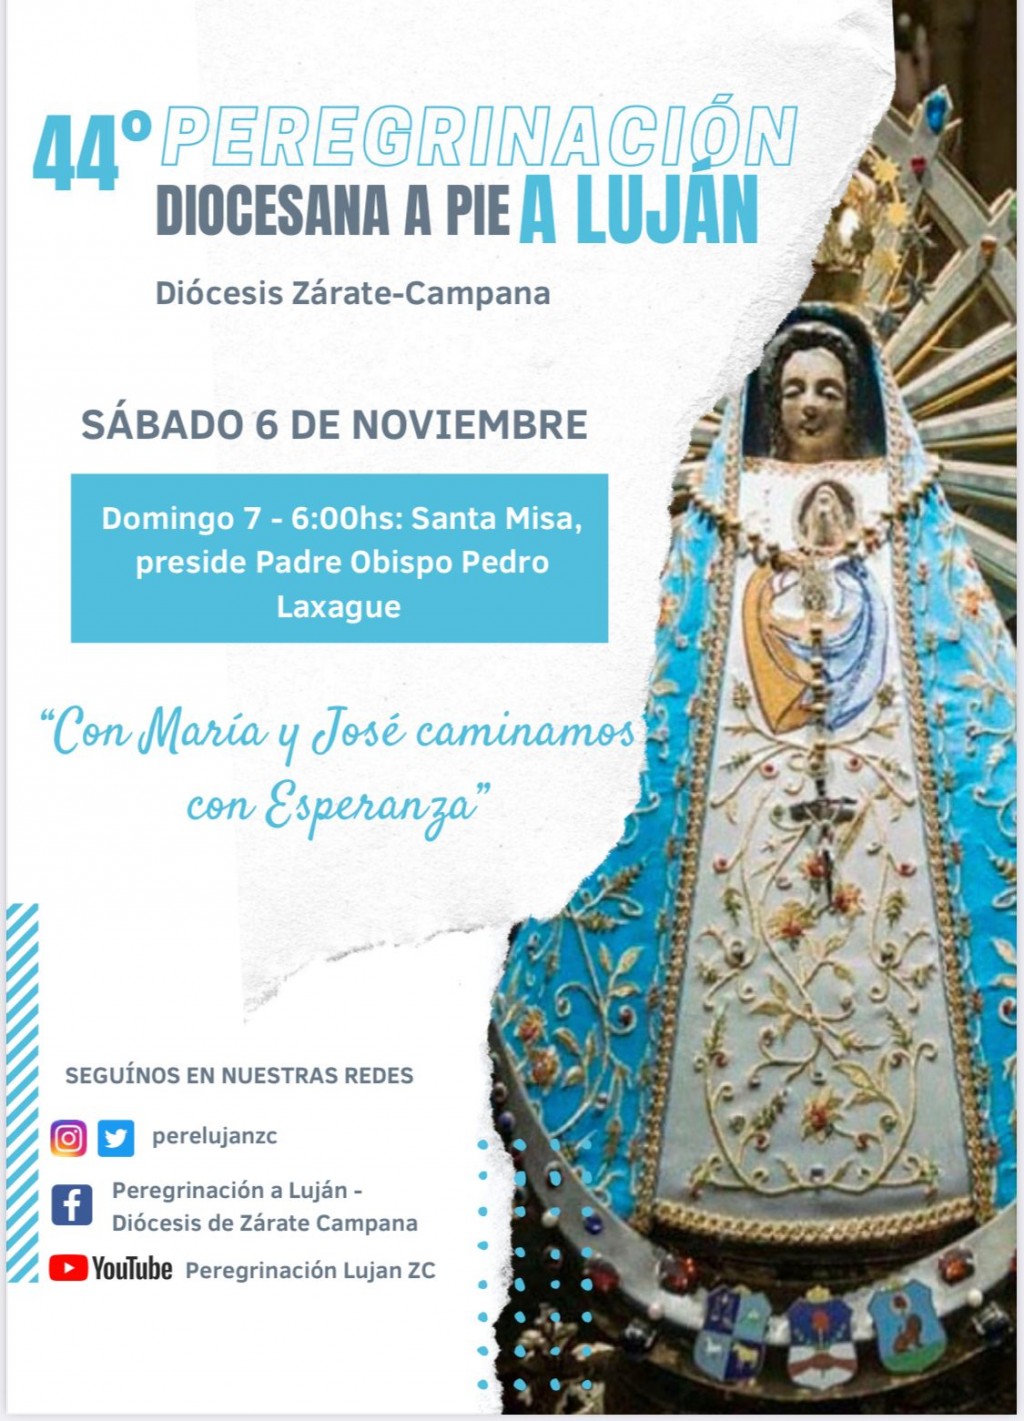 El sábado 6 de noviembre se llevará a cabo la Peregrinación a Luján